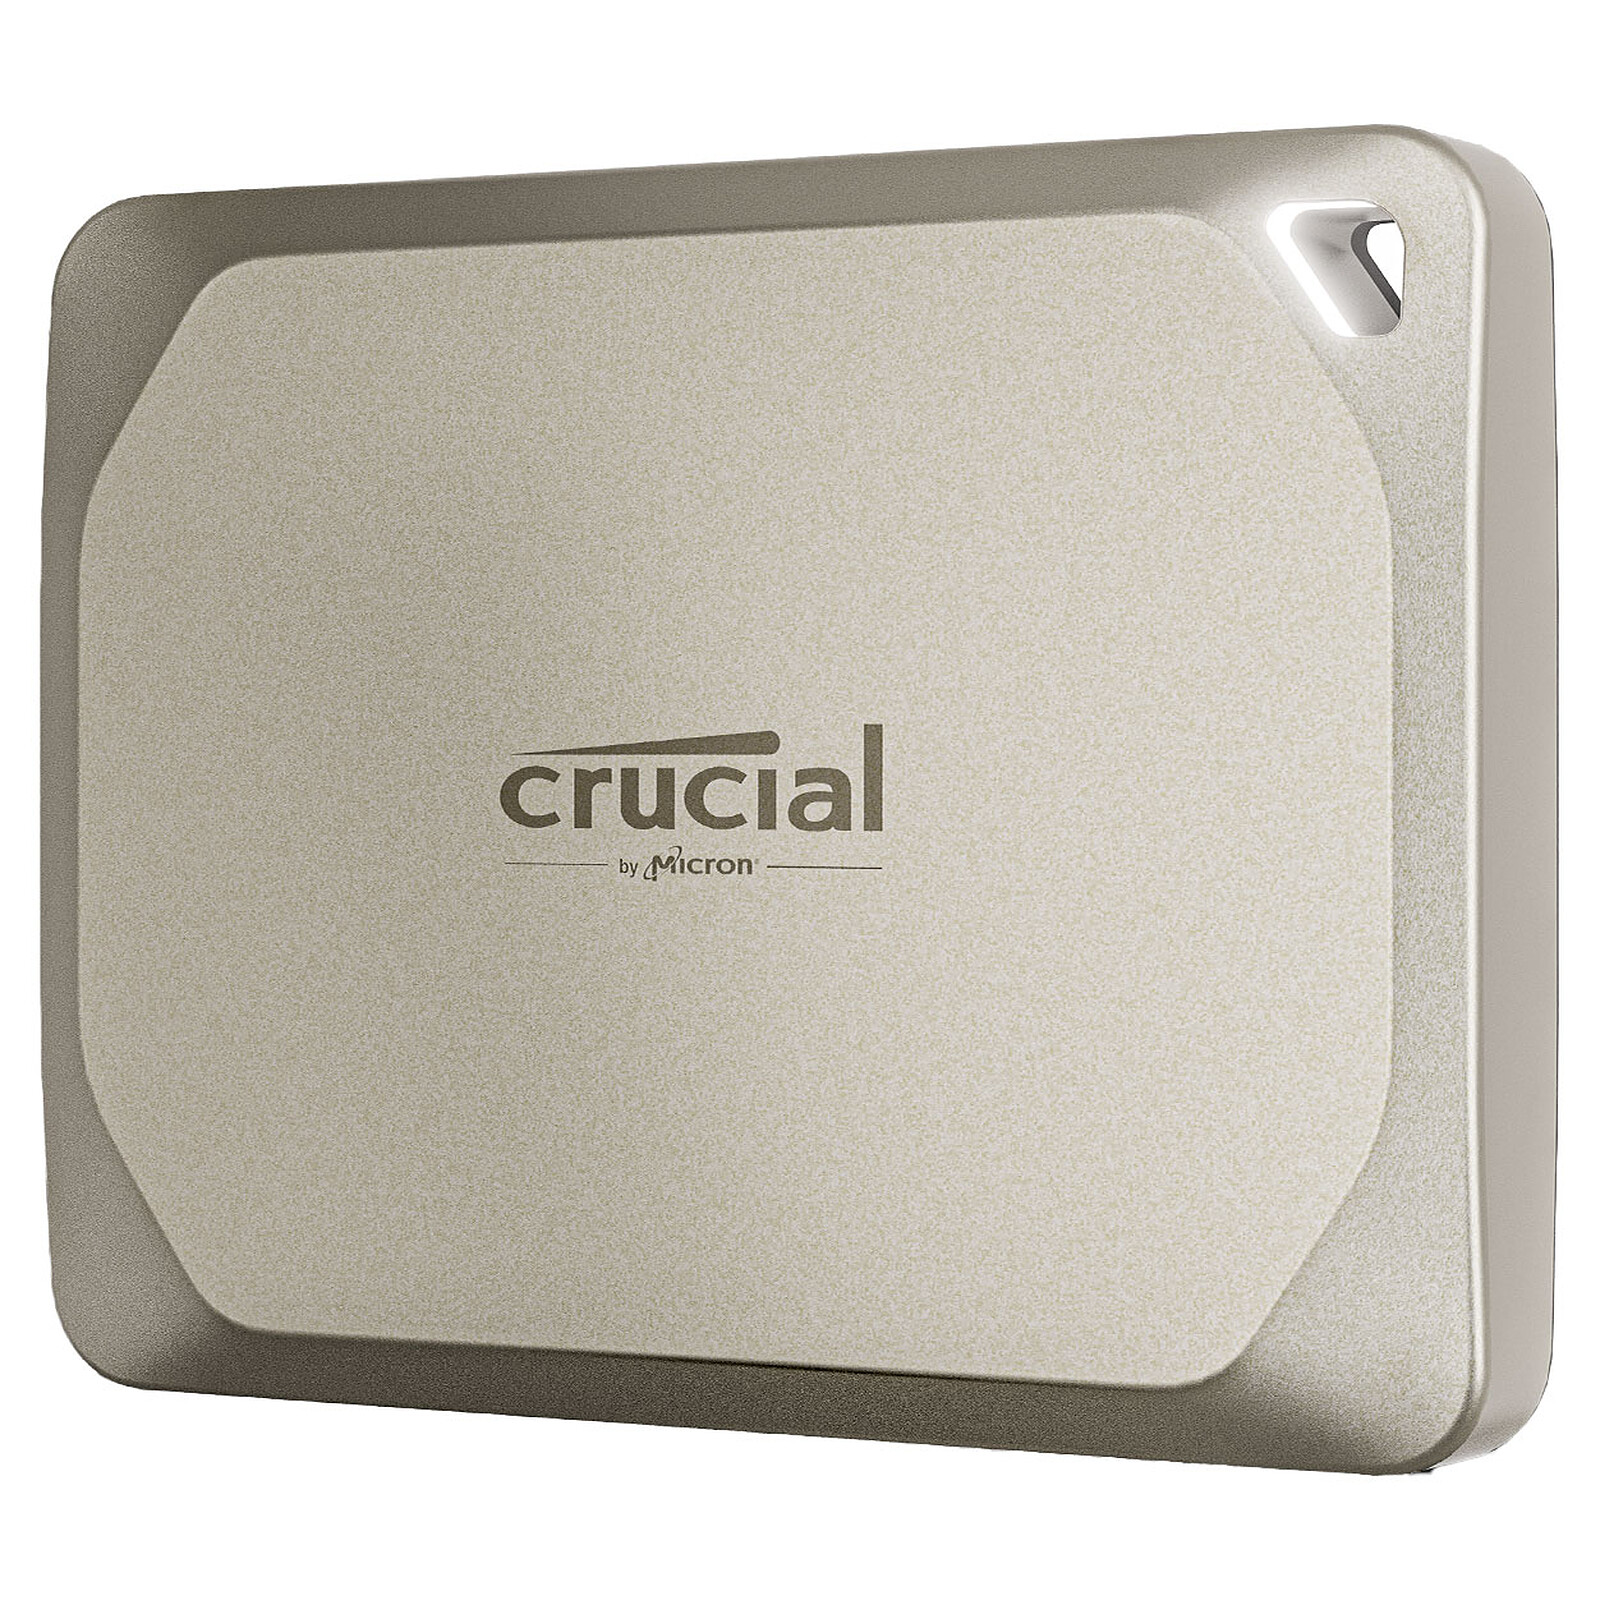 Crucial X6 Portable 1 To - Disque dur externe - LDLC